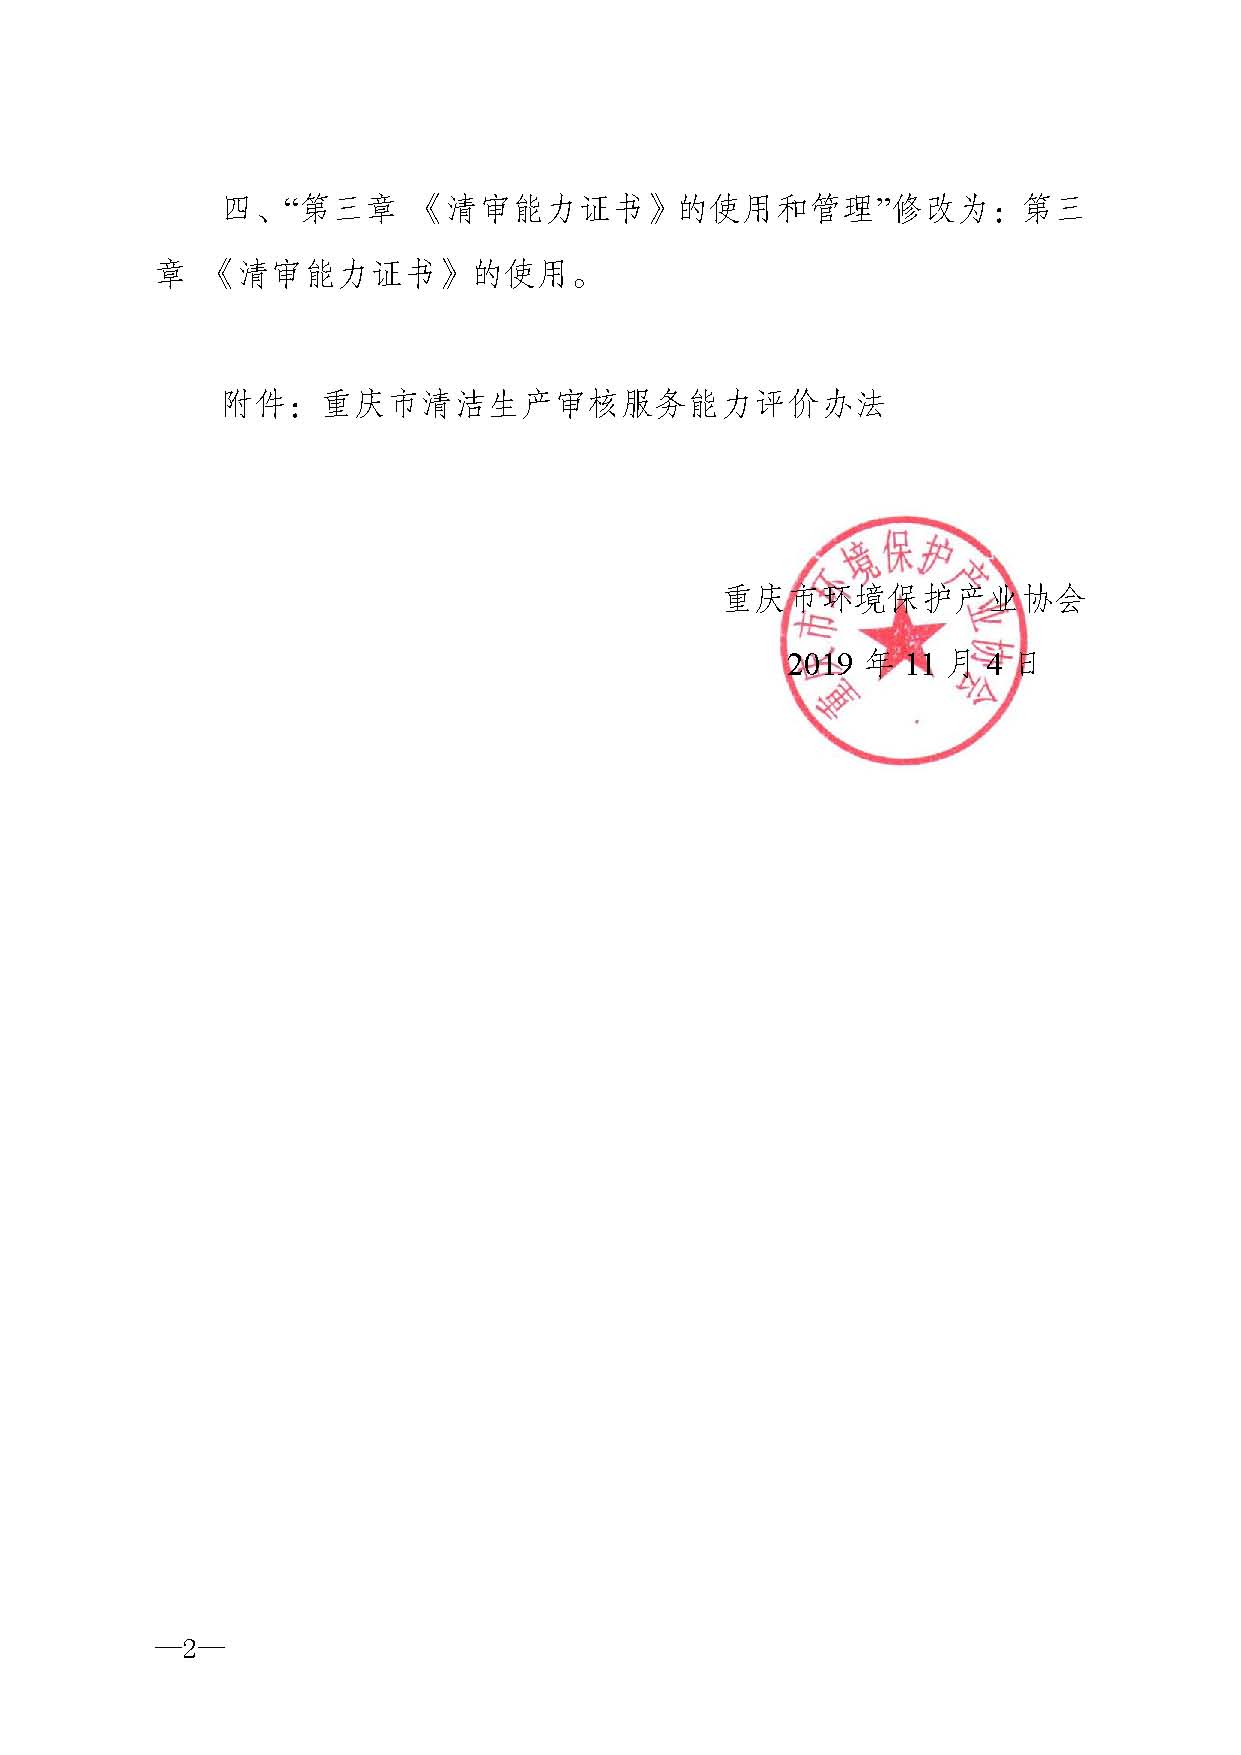 重庆市环境保护产业协会关于修改《重庆市清洁生产审核服务能力评价管理办法》的通知-副本_页面_2